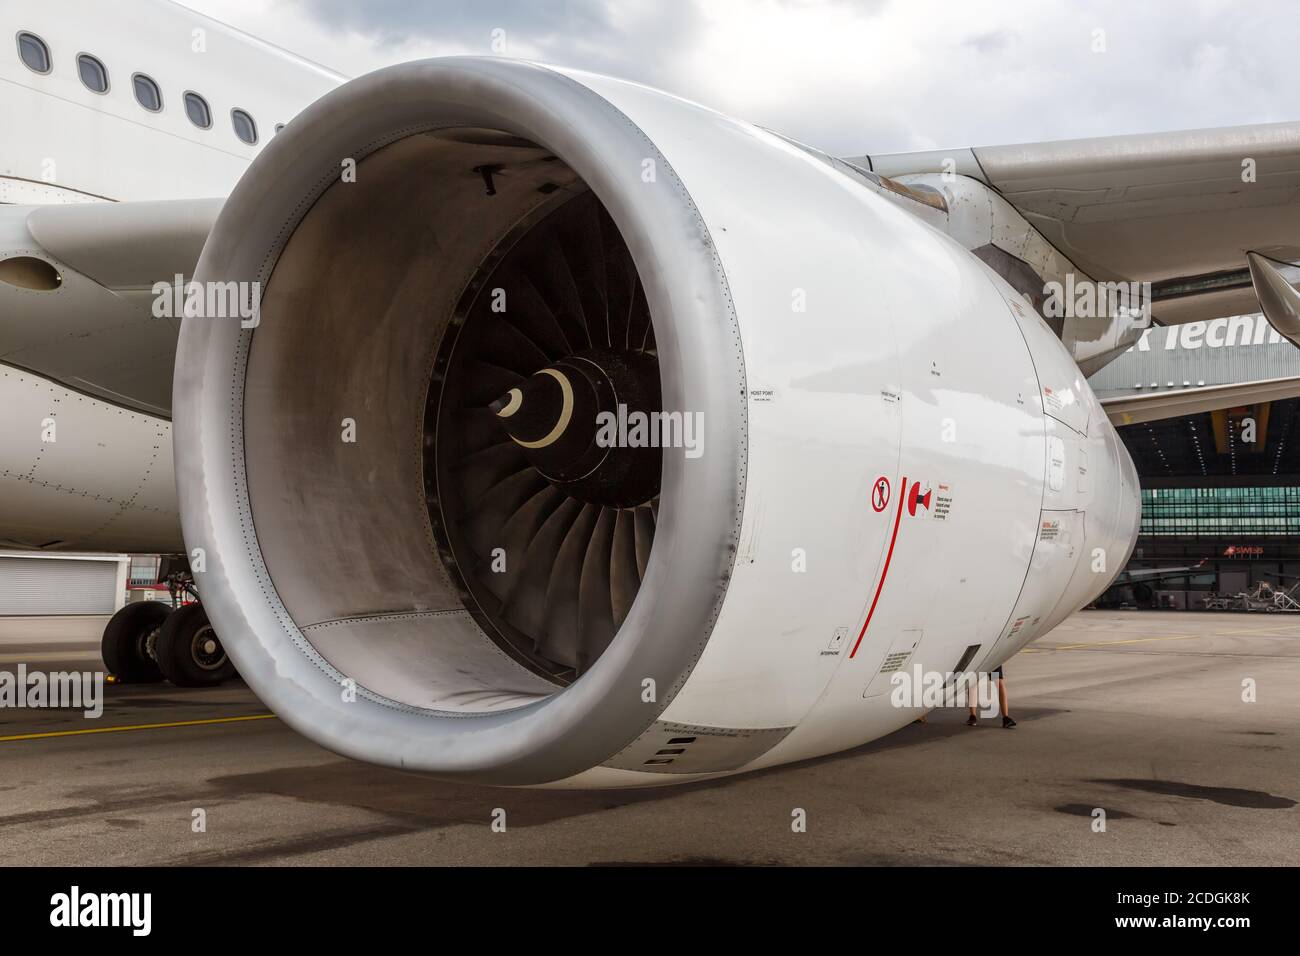 Zurich, Switzerland - July 22, 2020: Swiss Airbus A330-300 Rolls-Royce Trent RB211 airplane engine at Zurich Airport (ZRH) in Switzerland. Stock Photo